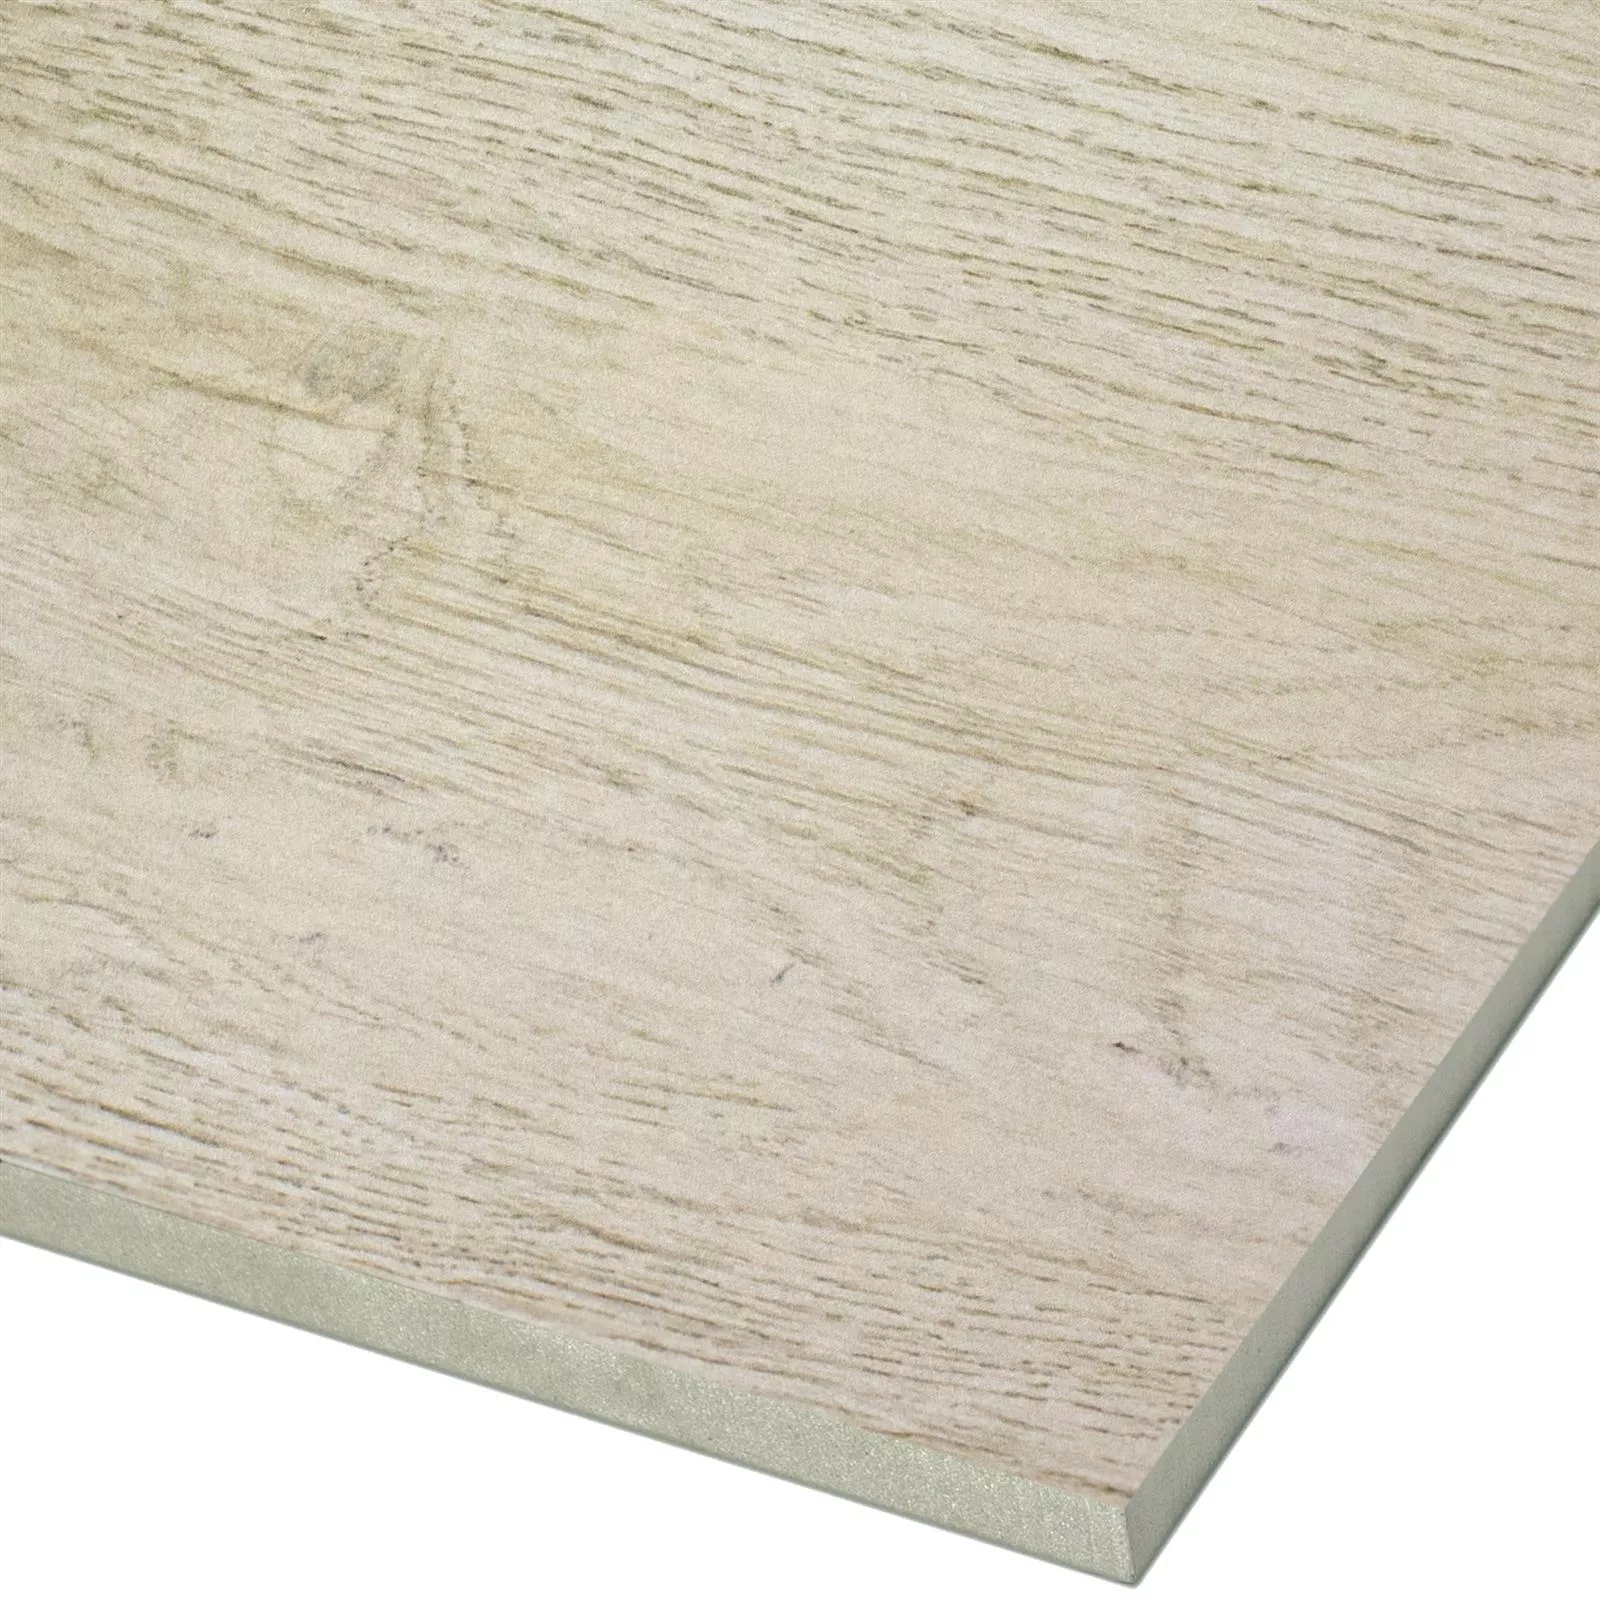 Sample Floor Tiles Wood Optic Alexandria Beige 30x60cm